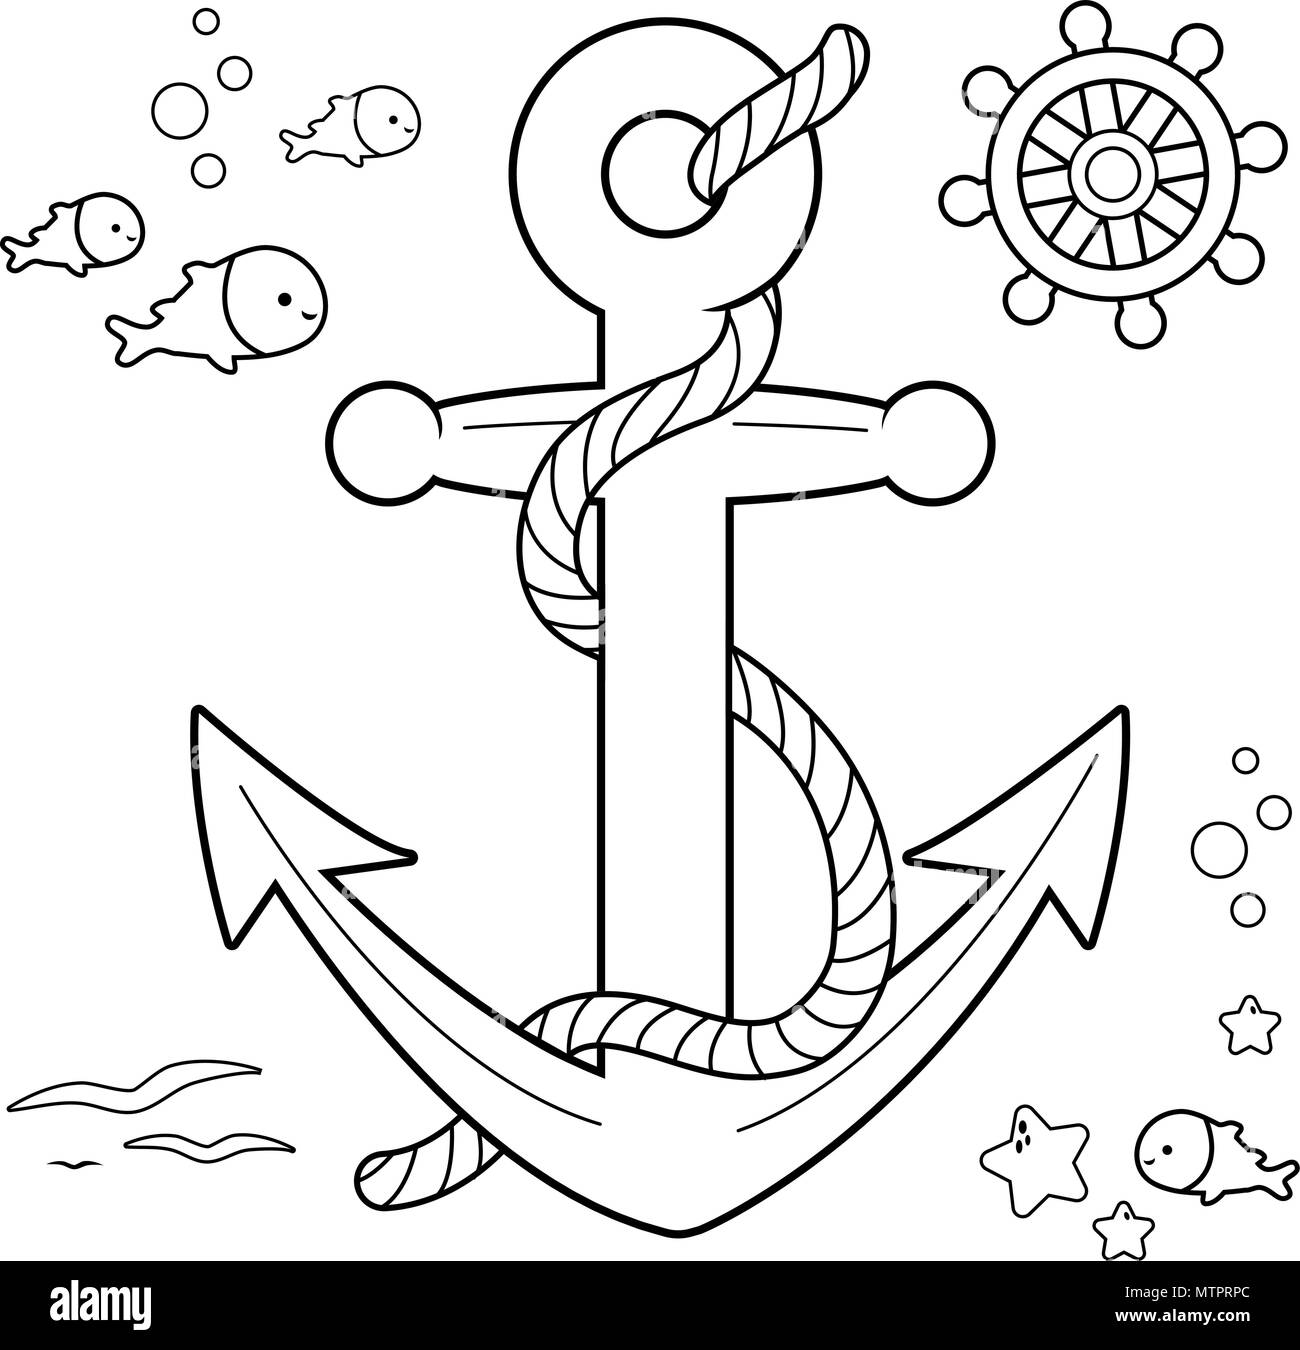 https://c8.alamy.com/compes/mtprpc/coleccion-nautica-con-anclaje-barco-timon-y-pescar-con-cuerda-libro-para-colorear-de-blanco-y-negro-pagina-mtprpc.jpg